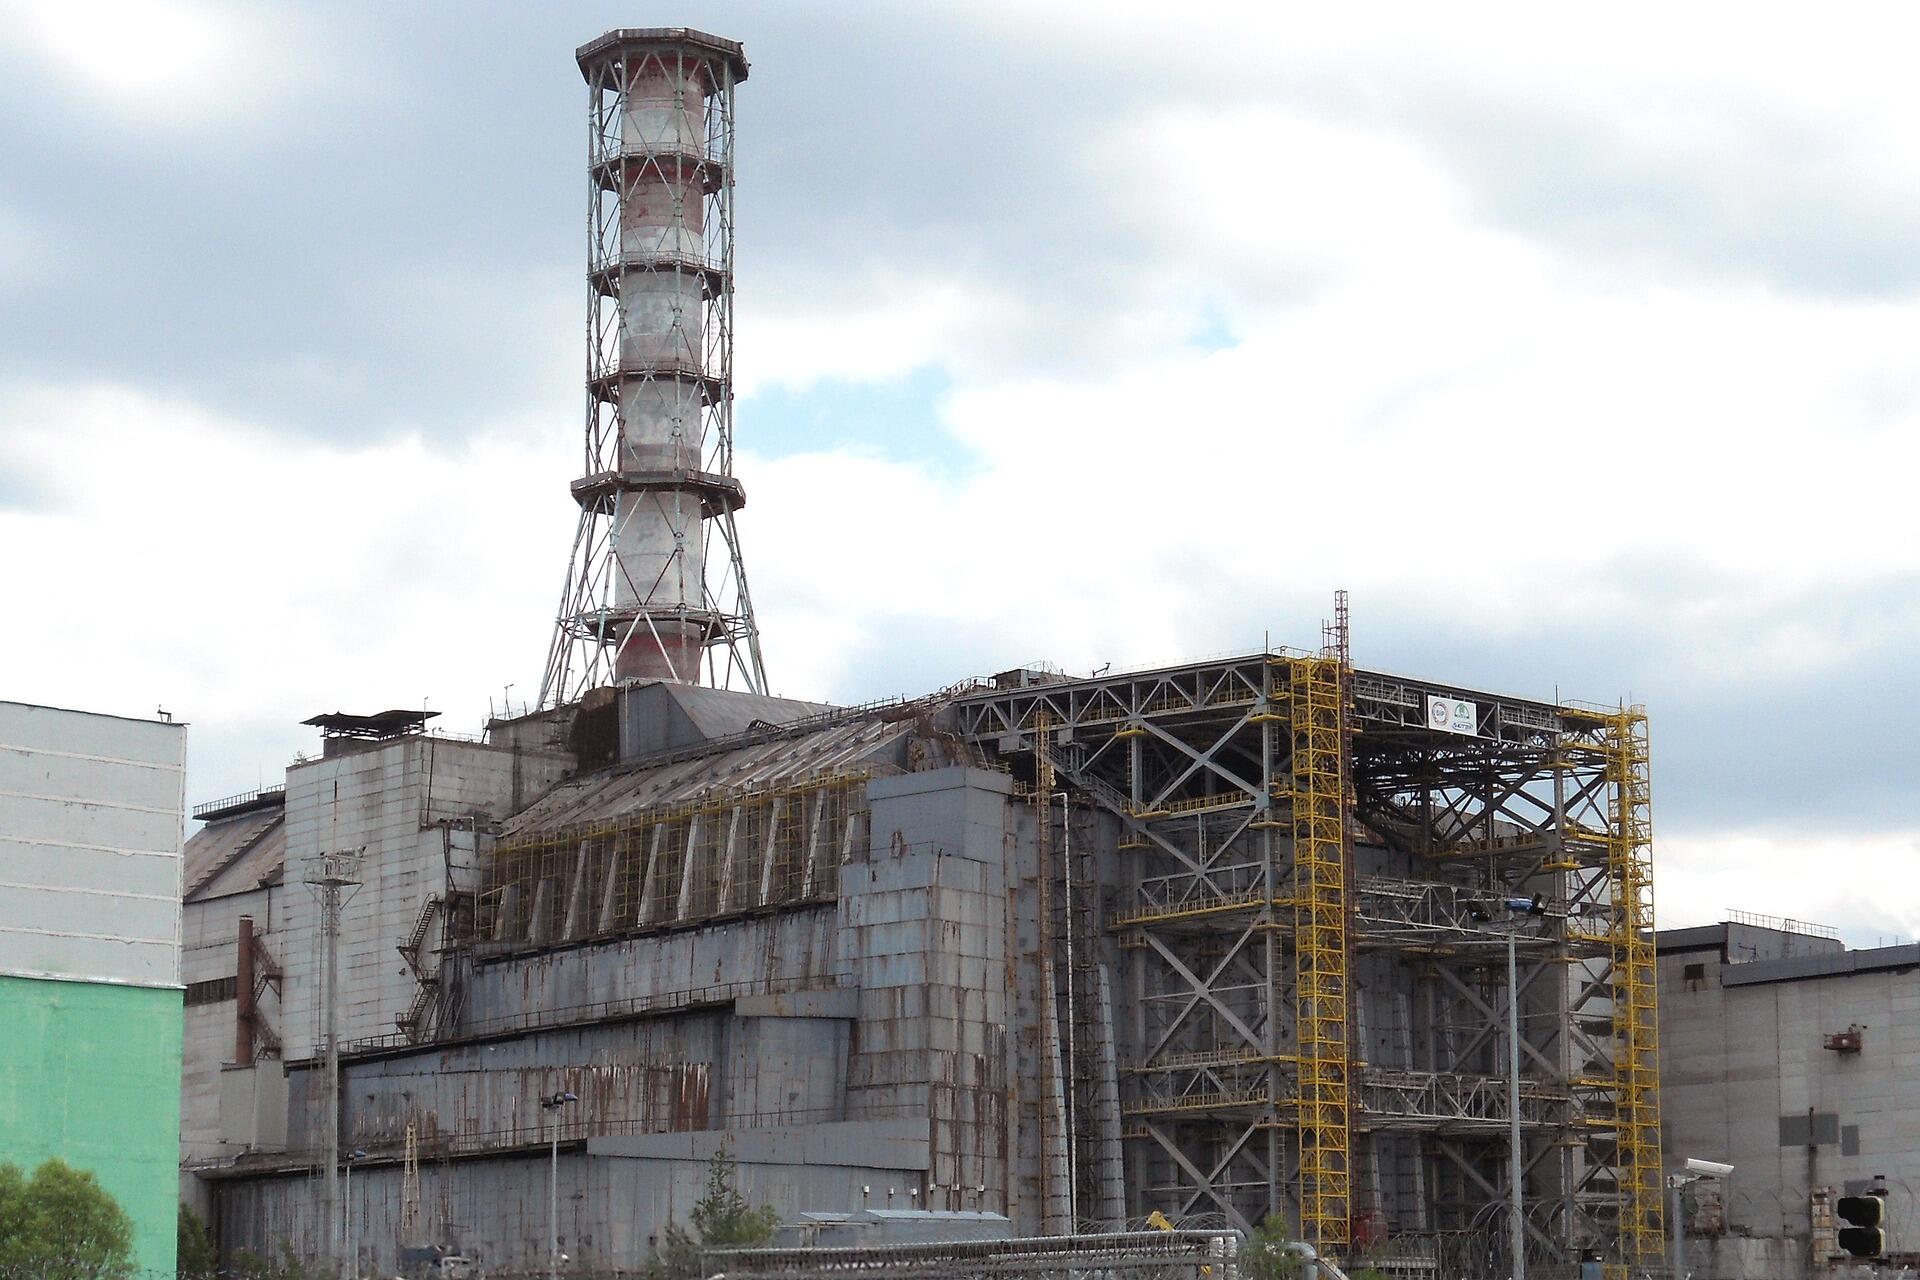 chernobyl-4908677_1920